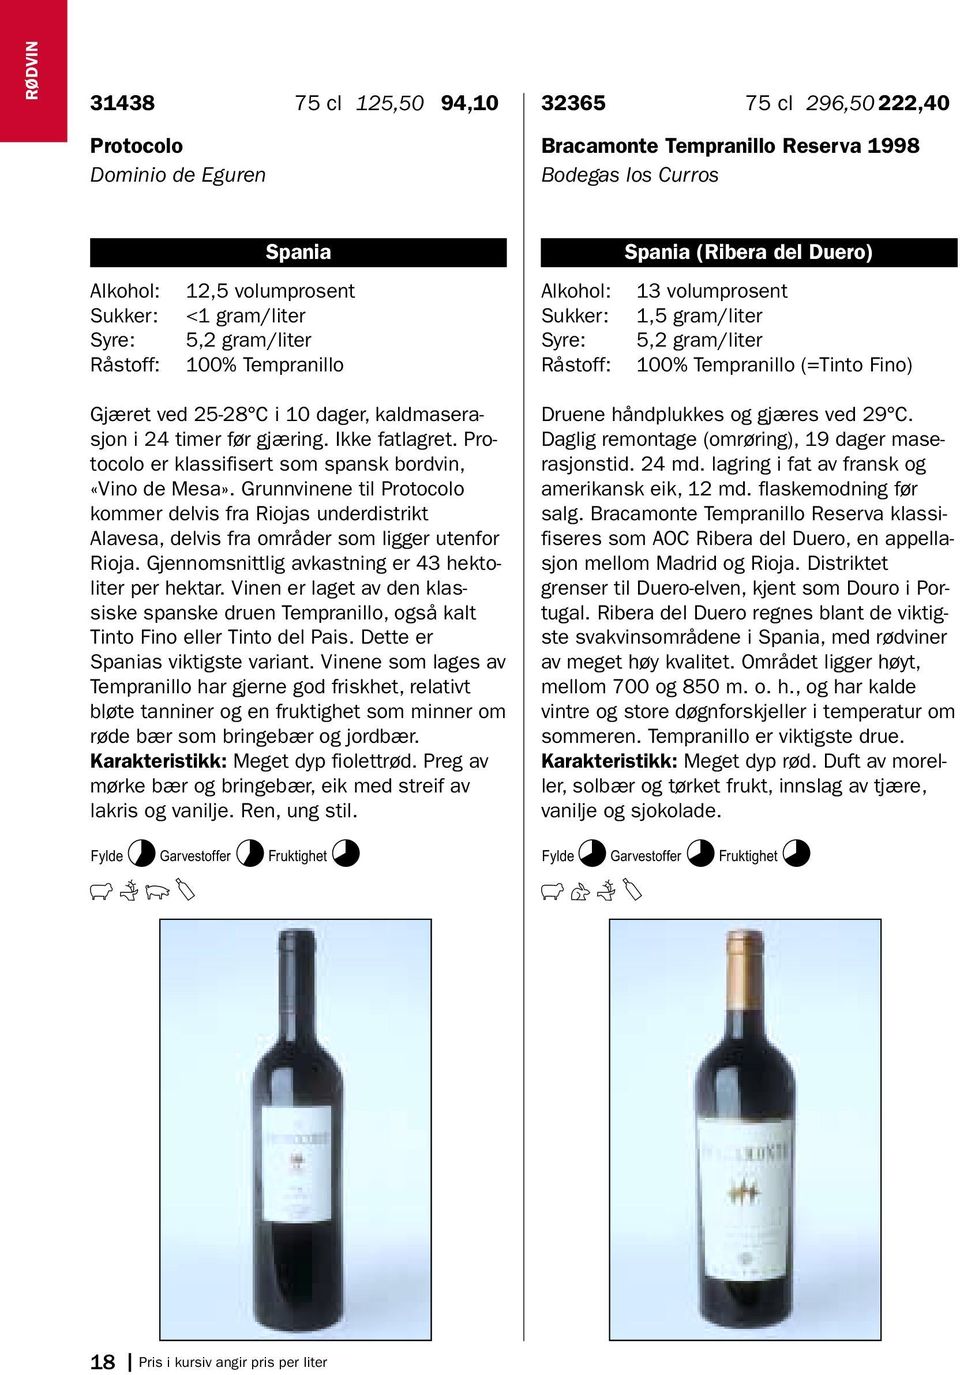 Ikke fatlagret. Protocolo er klassifisert som spansk bordvin, «Vino de Mesa». Grunnvinene til Protocolo kommer delvis fra Riojas underdistrikt Alavesa, delvis fra områder som ligger utenfor Rioja.